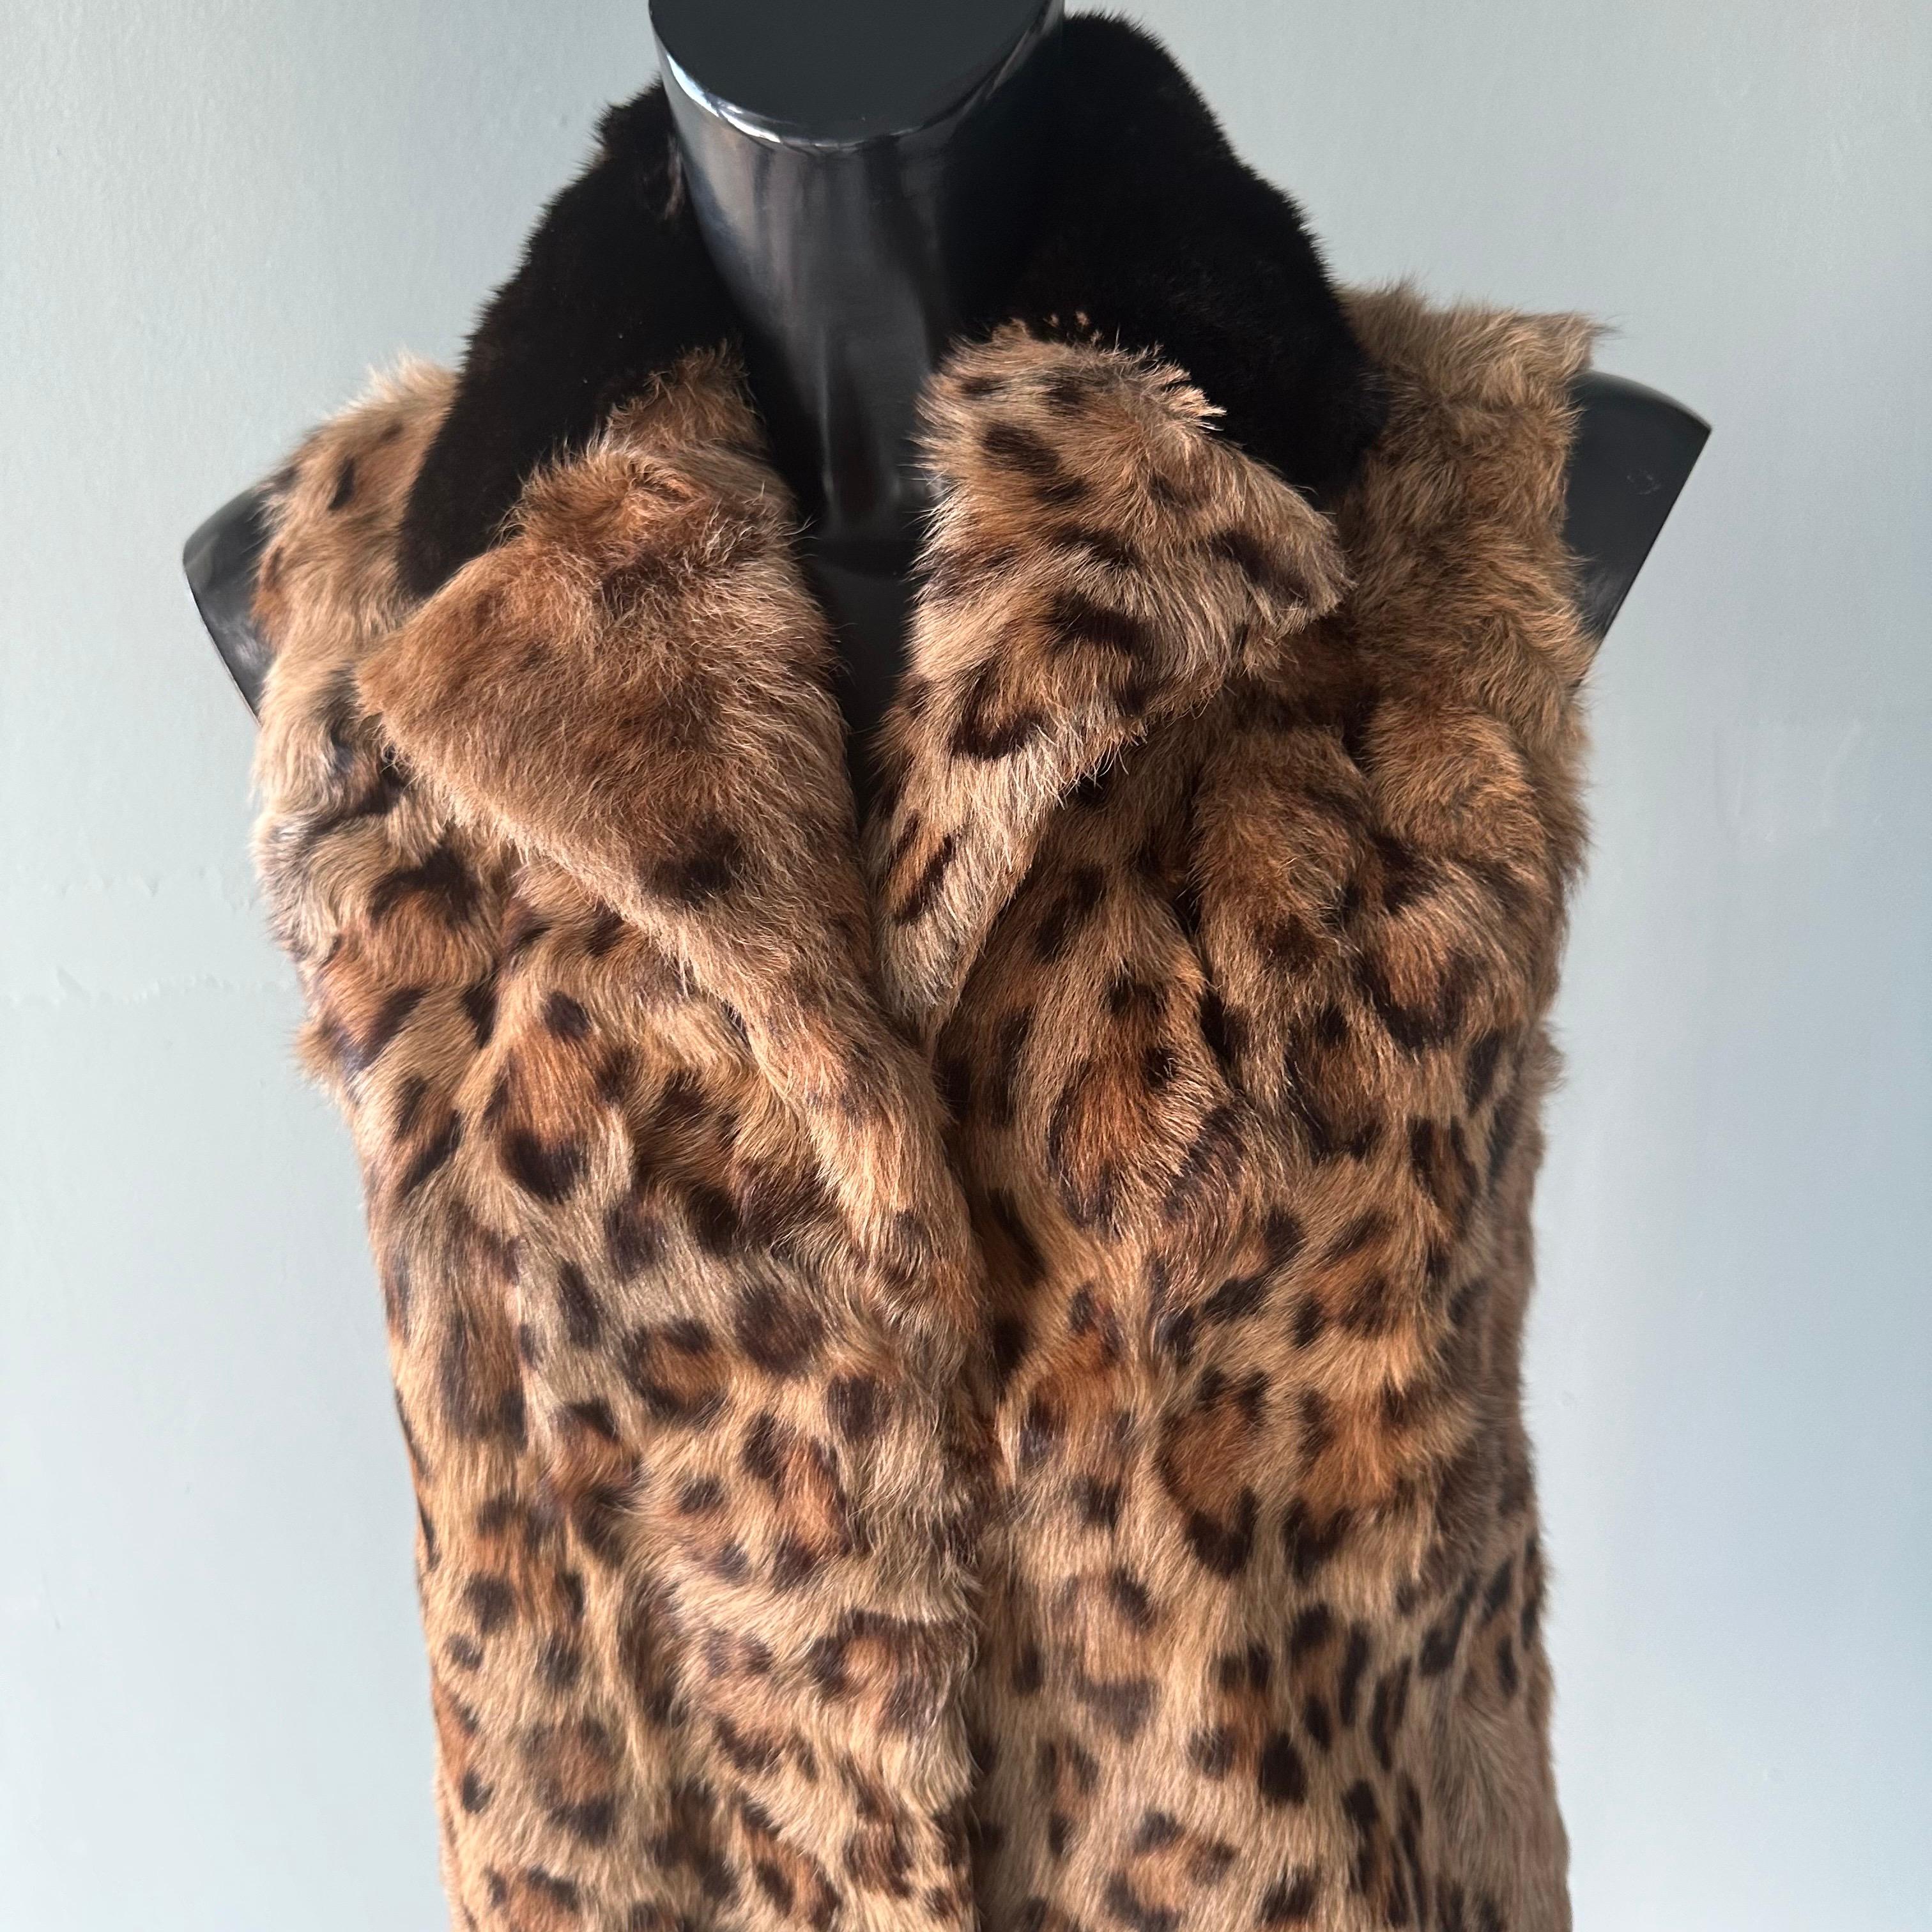 Gilet Prada  in pelliccia di capretto con stampa animalier For Sale 1